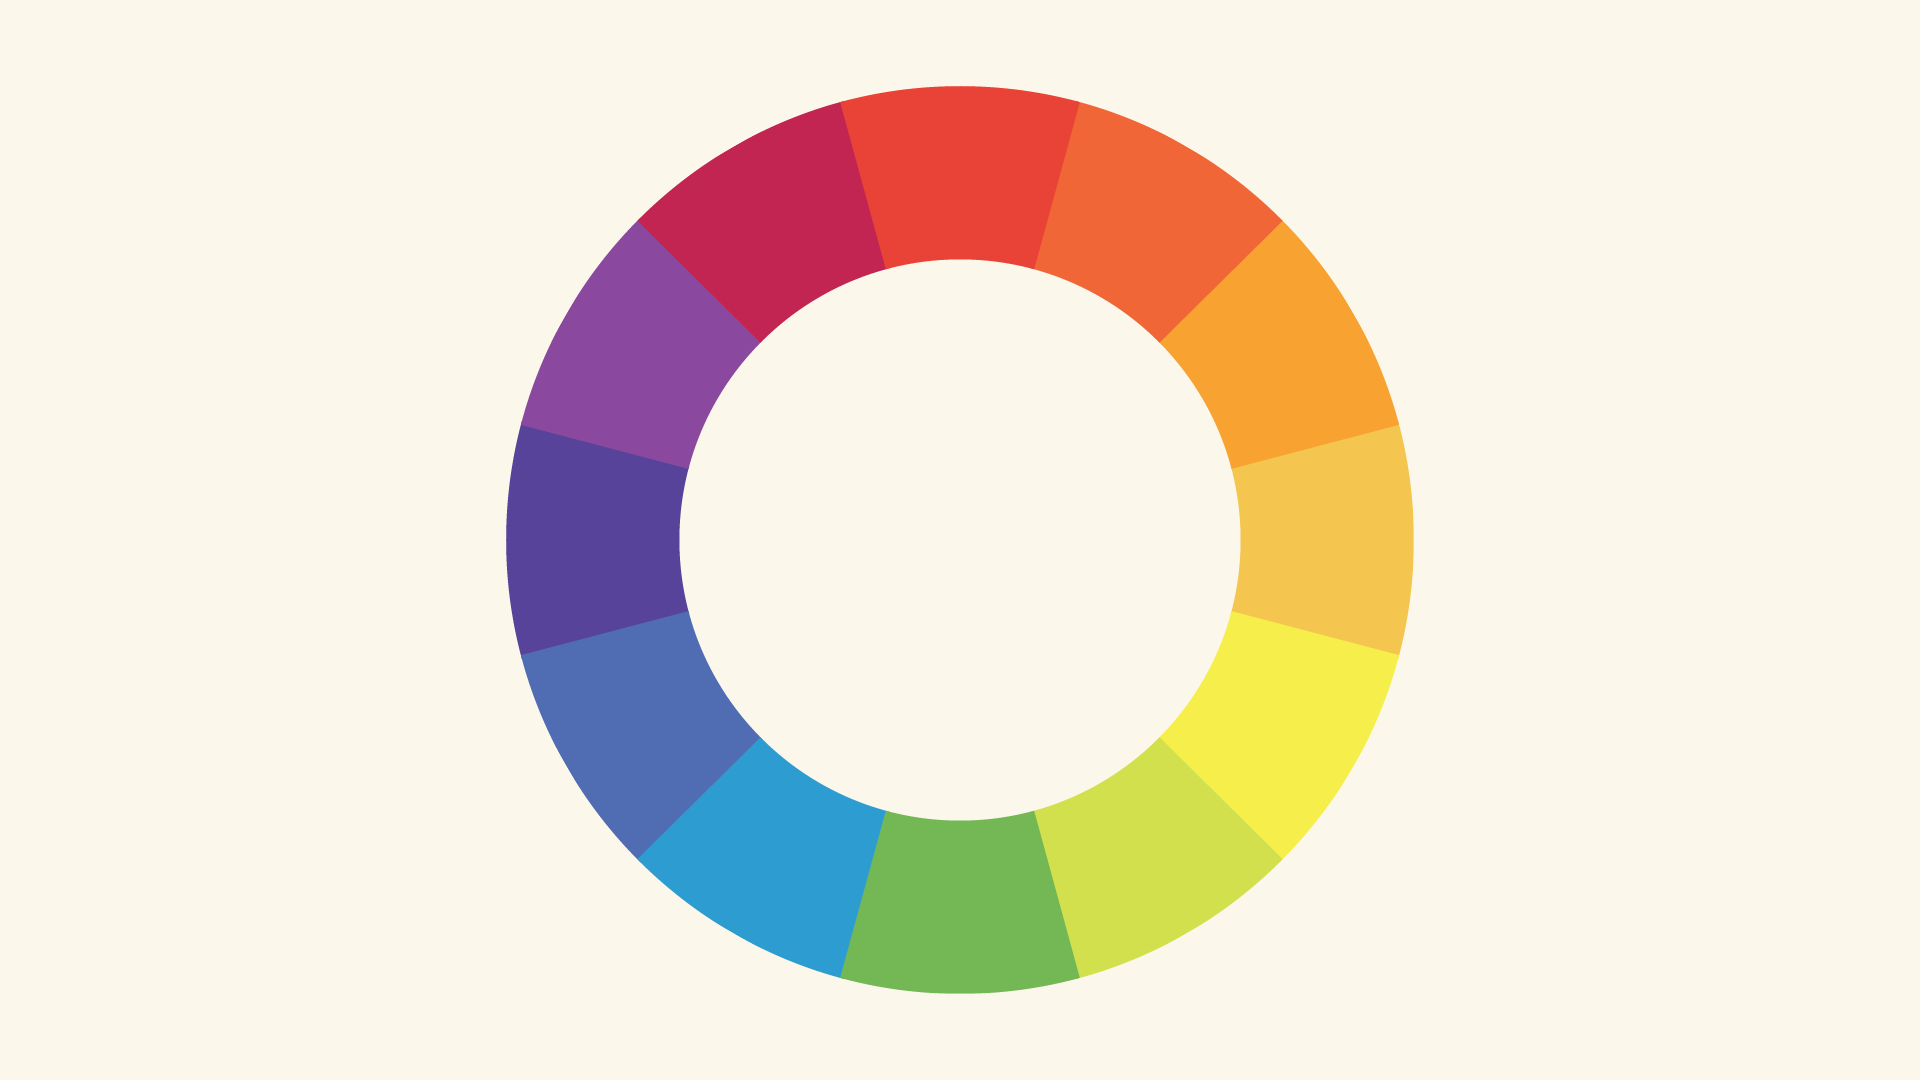   Metode pemilihan warna  untuk desain  grafis  Kuliah Desain 